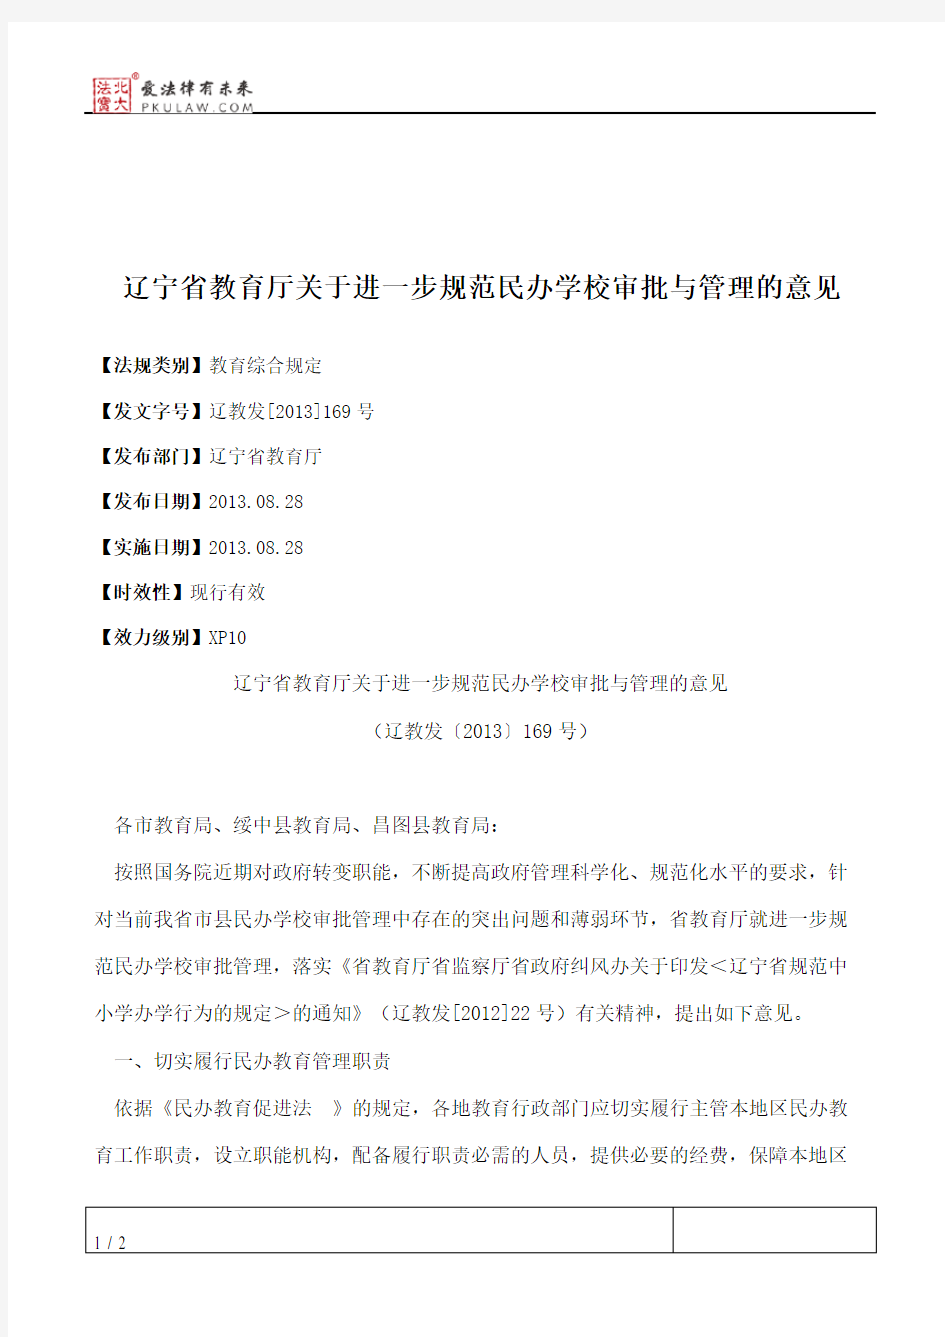 辽宁省教育厅关于进一步规范民办学校审批与管理的意见